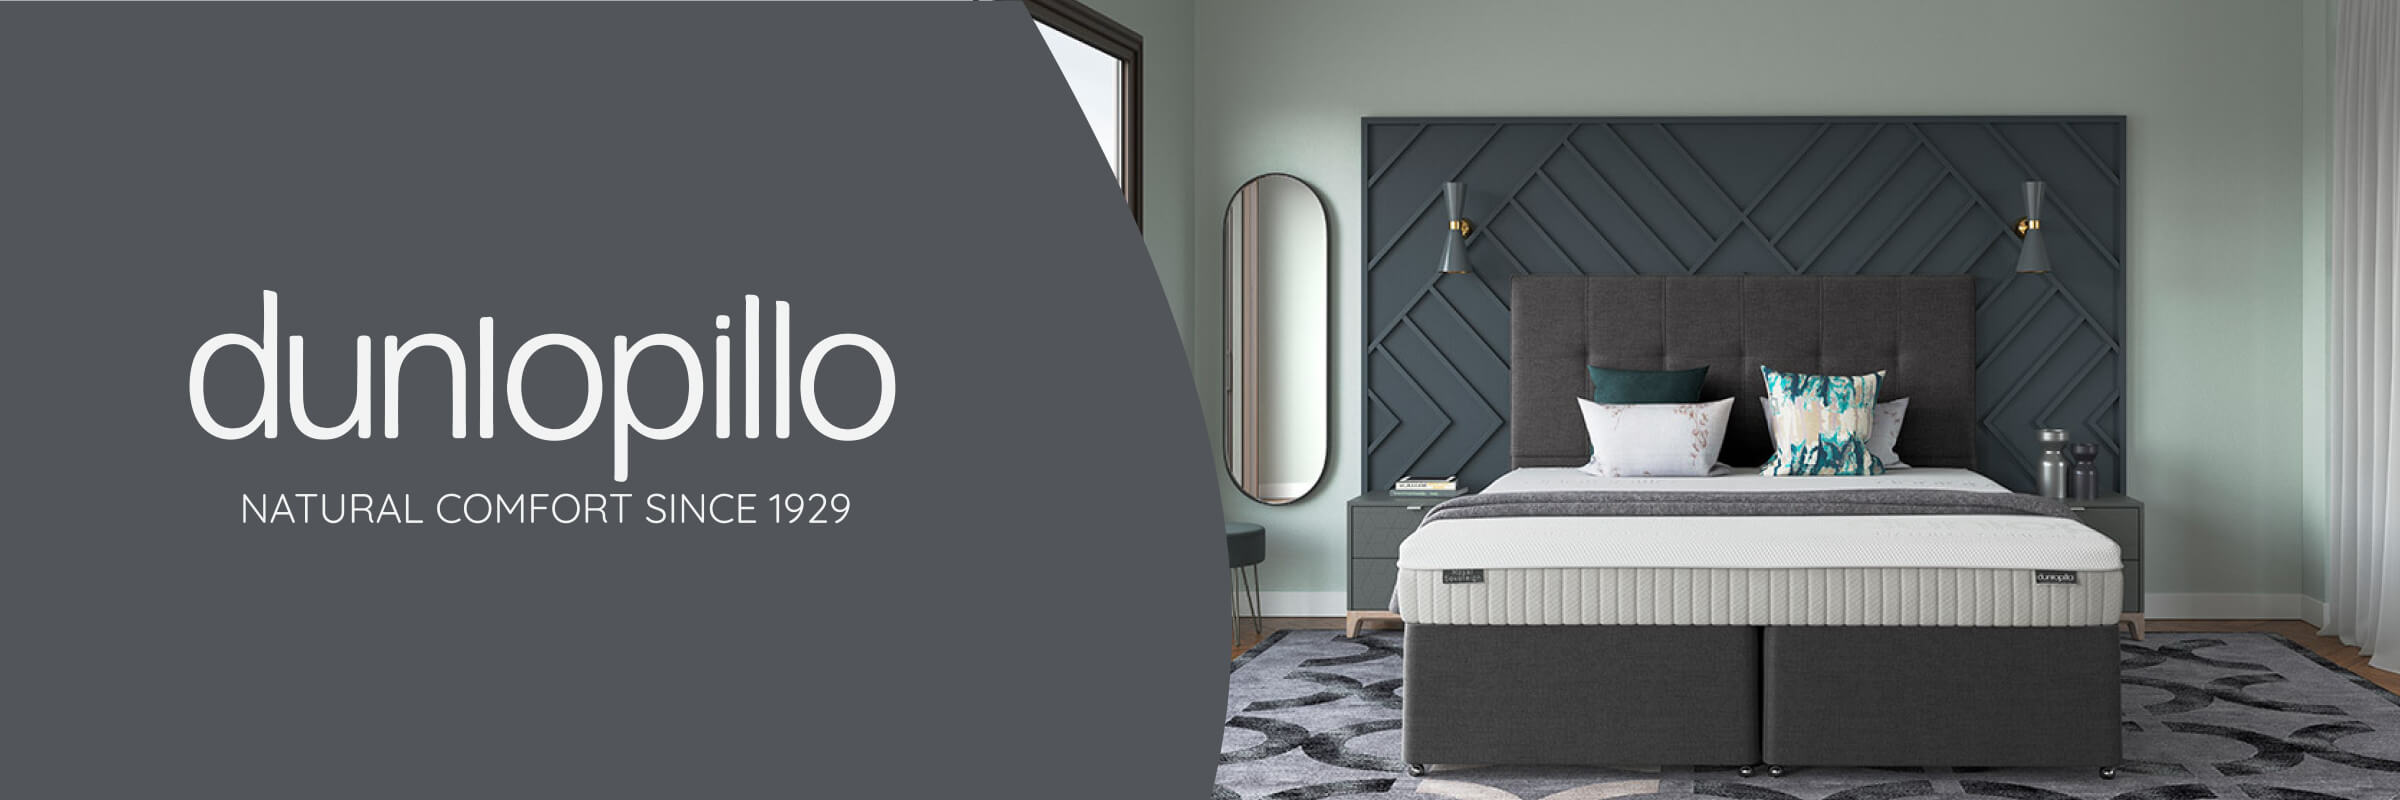 Dunlopillo mattresses and divan beds: natural comfort since 1929